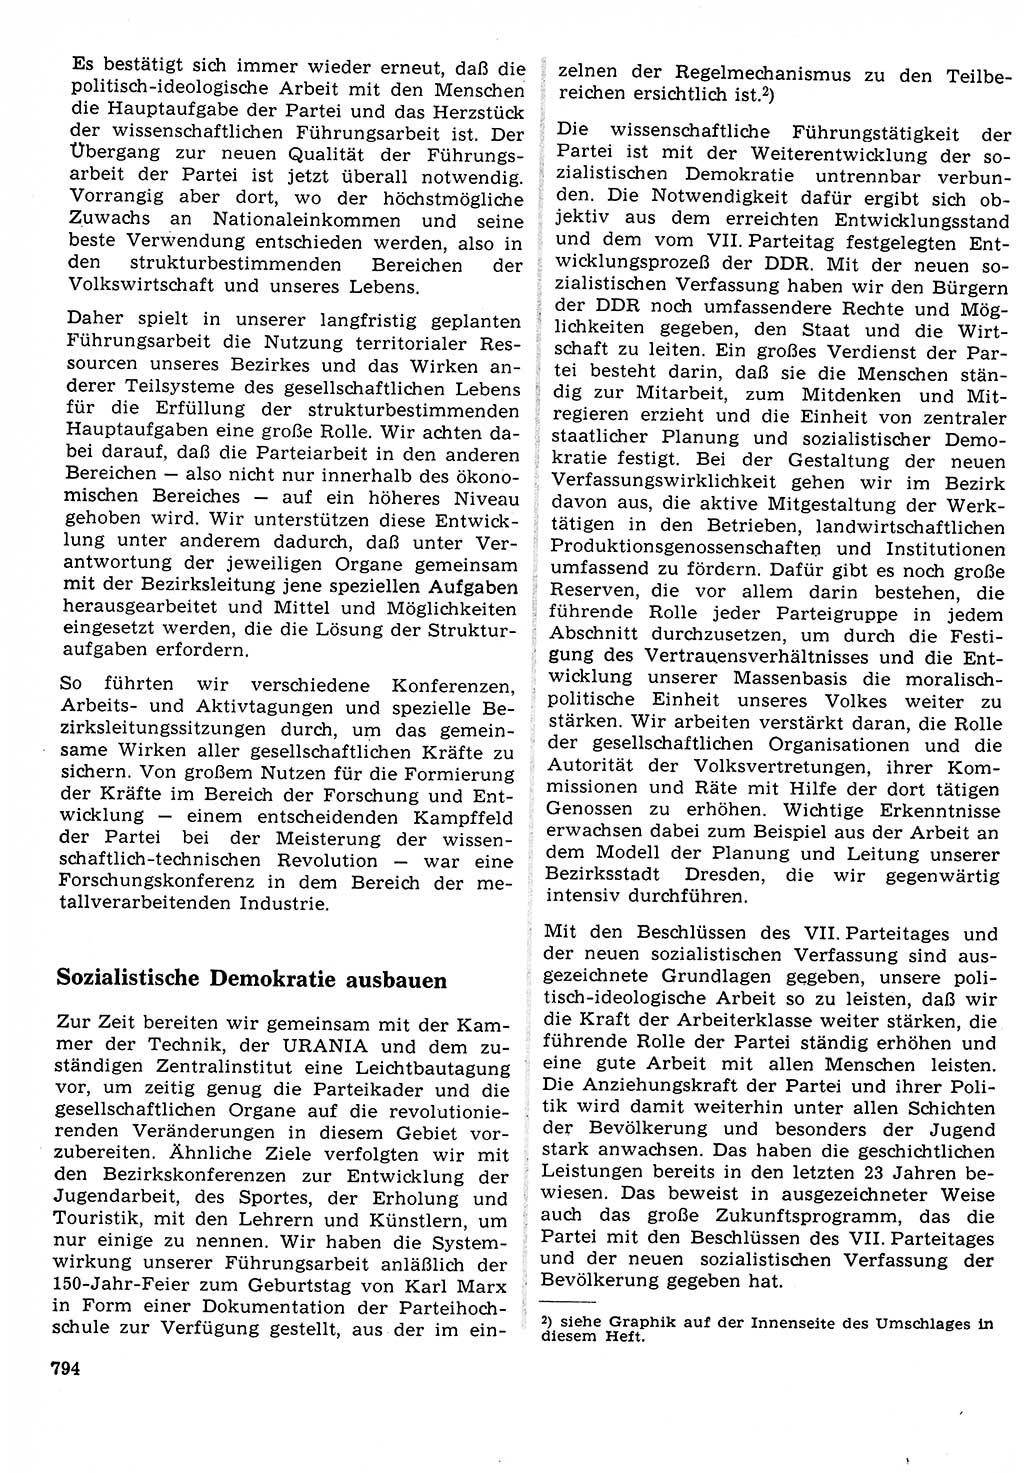 Neuer Weg (NW), Organ des Zentralkomitees (ZK) der SED (Sozialistische Einheitspartei Deutschlands) für Fragen des Parteilebens, 23. Jahrgang [Deutsche Demokratische Republik (DDR)] 1968, Seite 778 (NW ZK SED DDR 1968, S. 778)